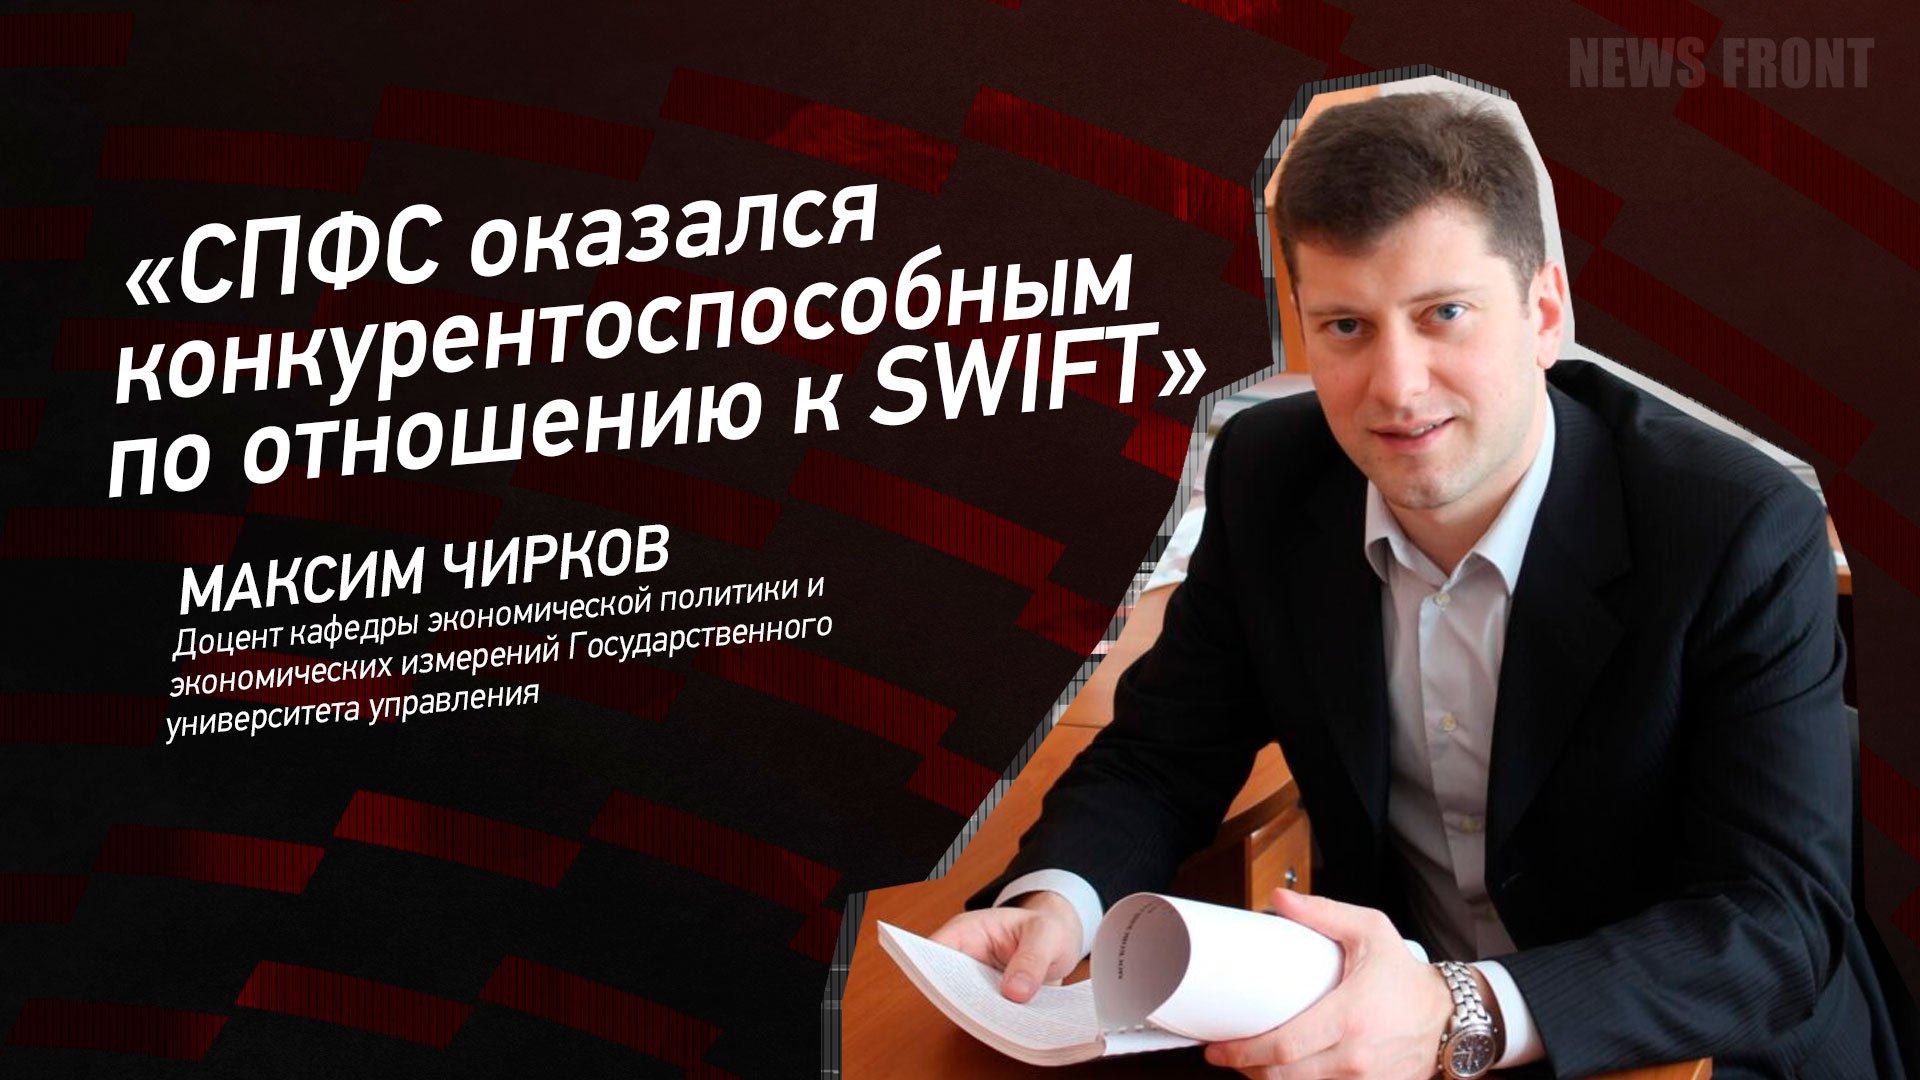 "СПФС оказался конкурентоспособным по отношению к SWIFT" - Максим Чирков